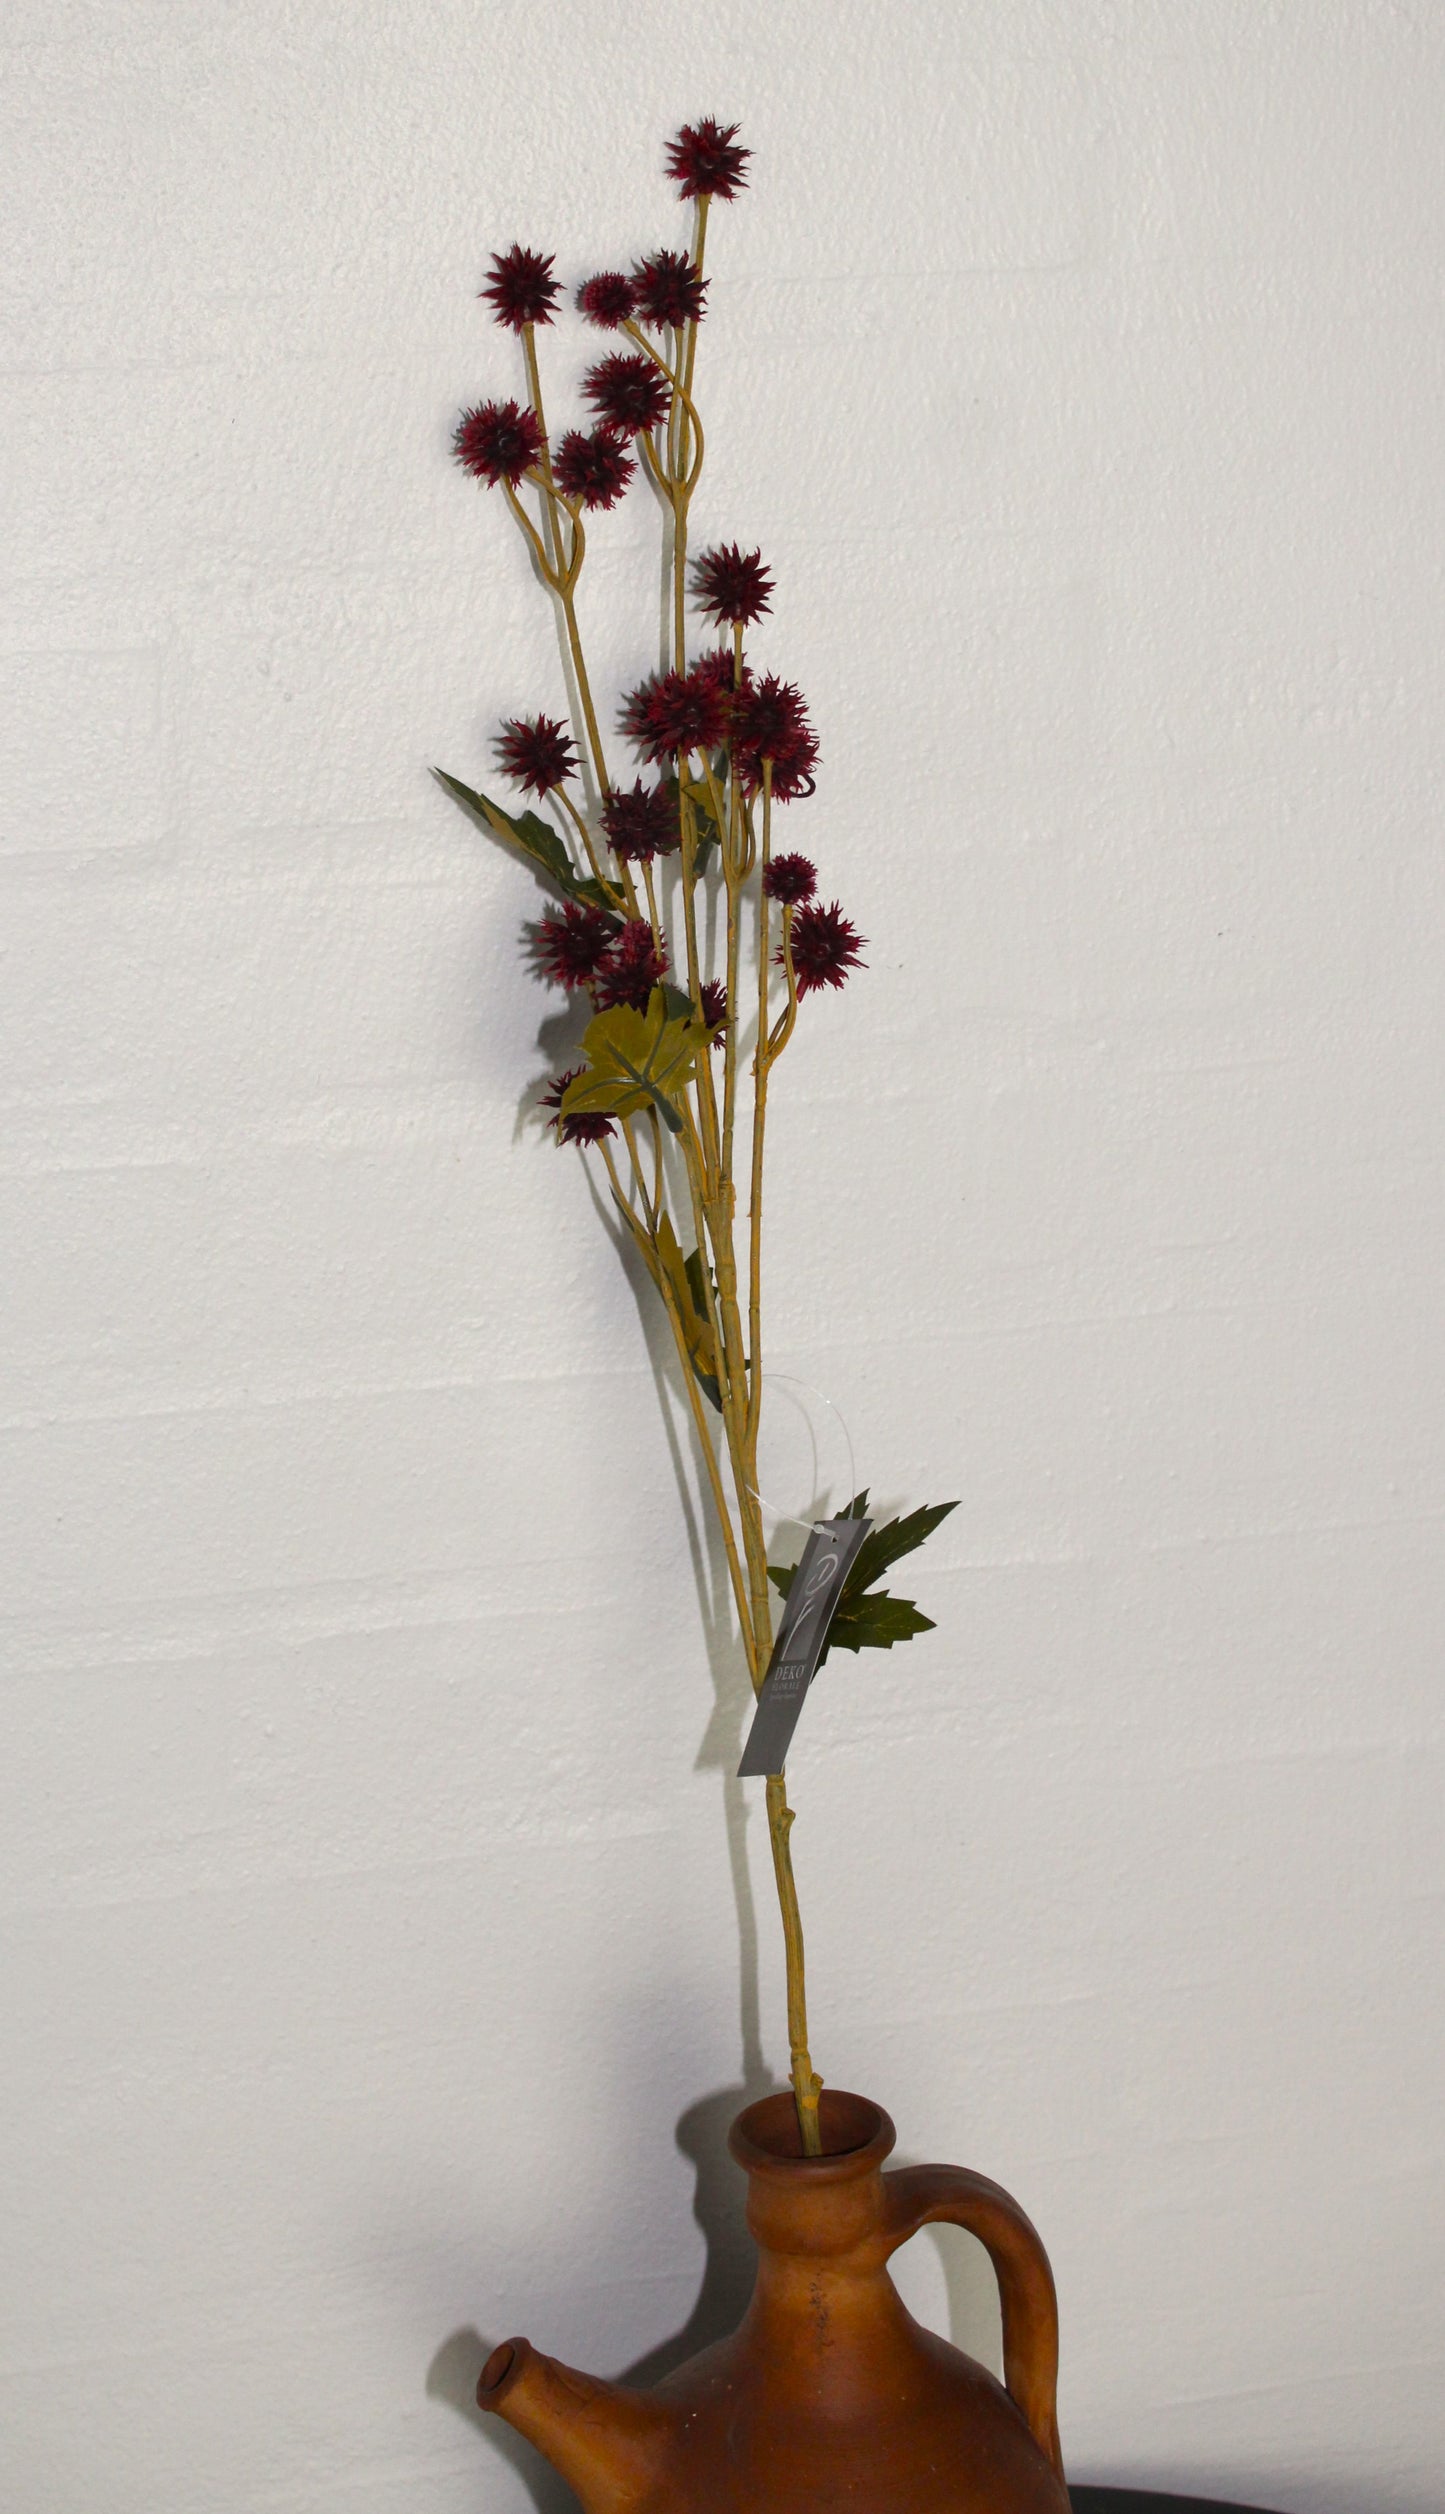 Deko Florale - 1 kunstig Sanikel stilk med små blomster, H 68 cm, bordeaux farve